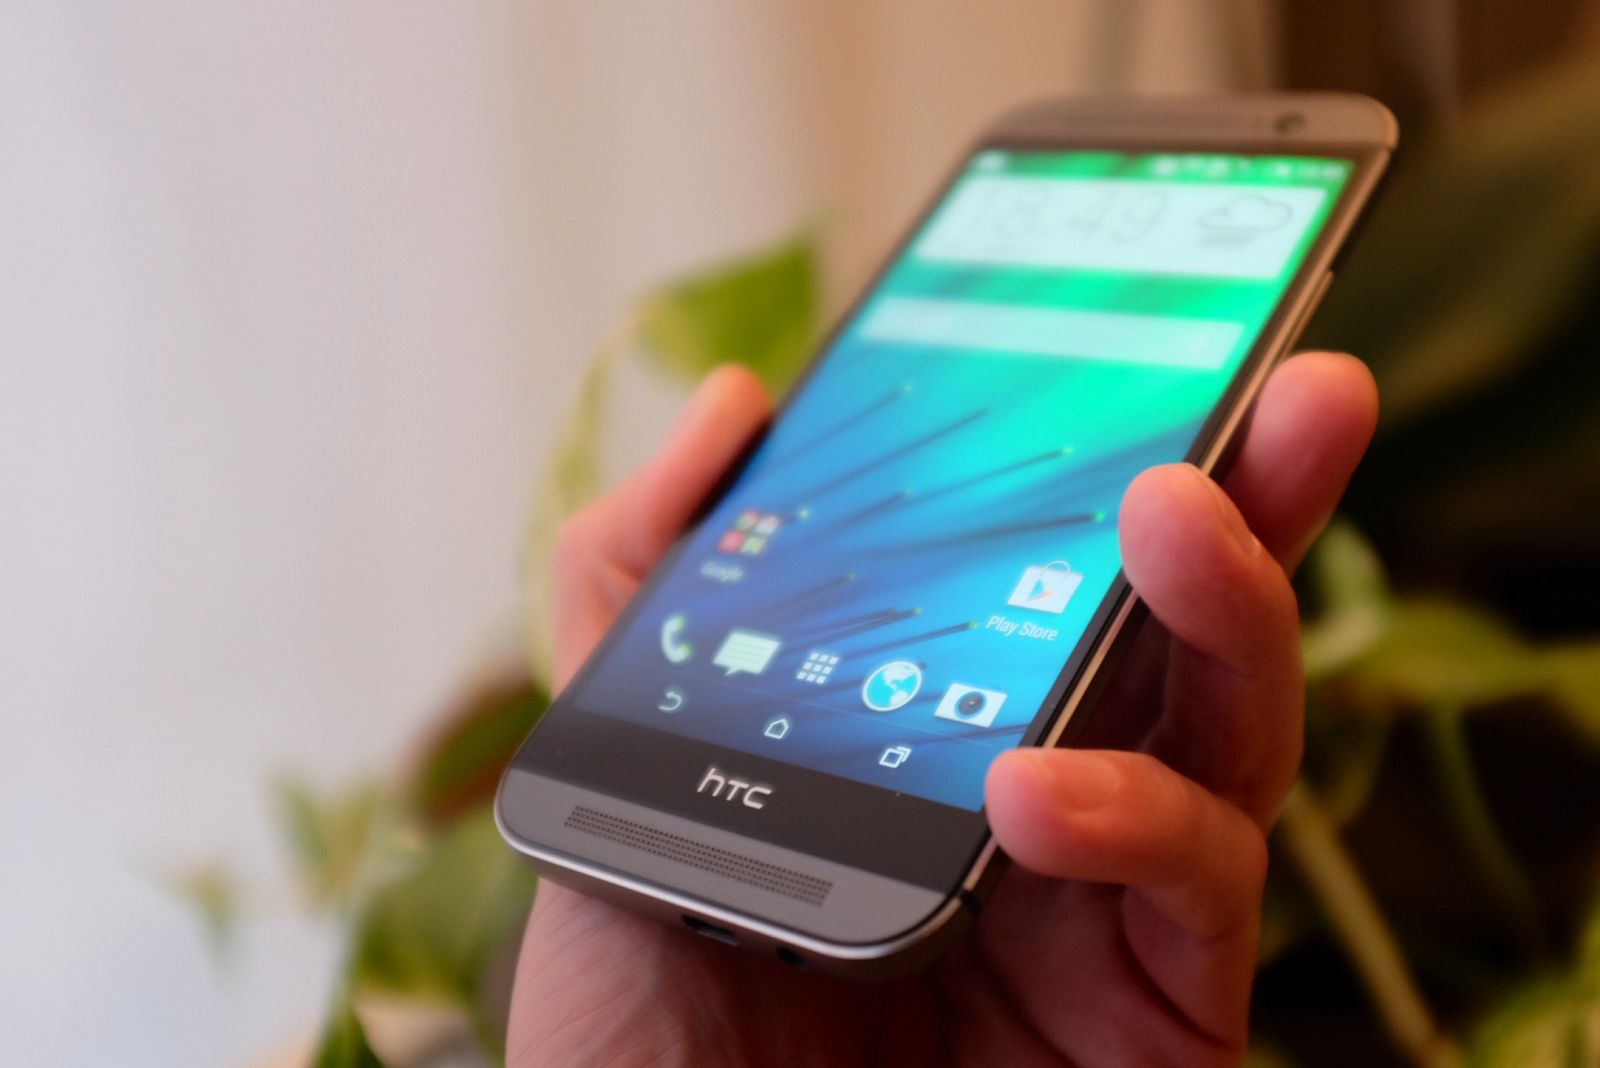 El HTC One utiliza la última versión del sistema operativo móvil Android, la versión 4.4